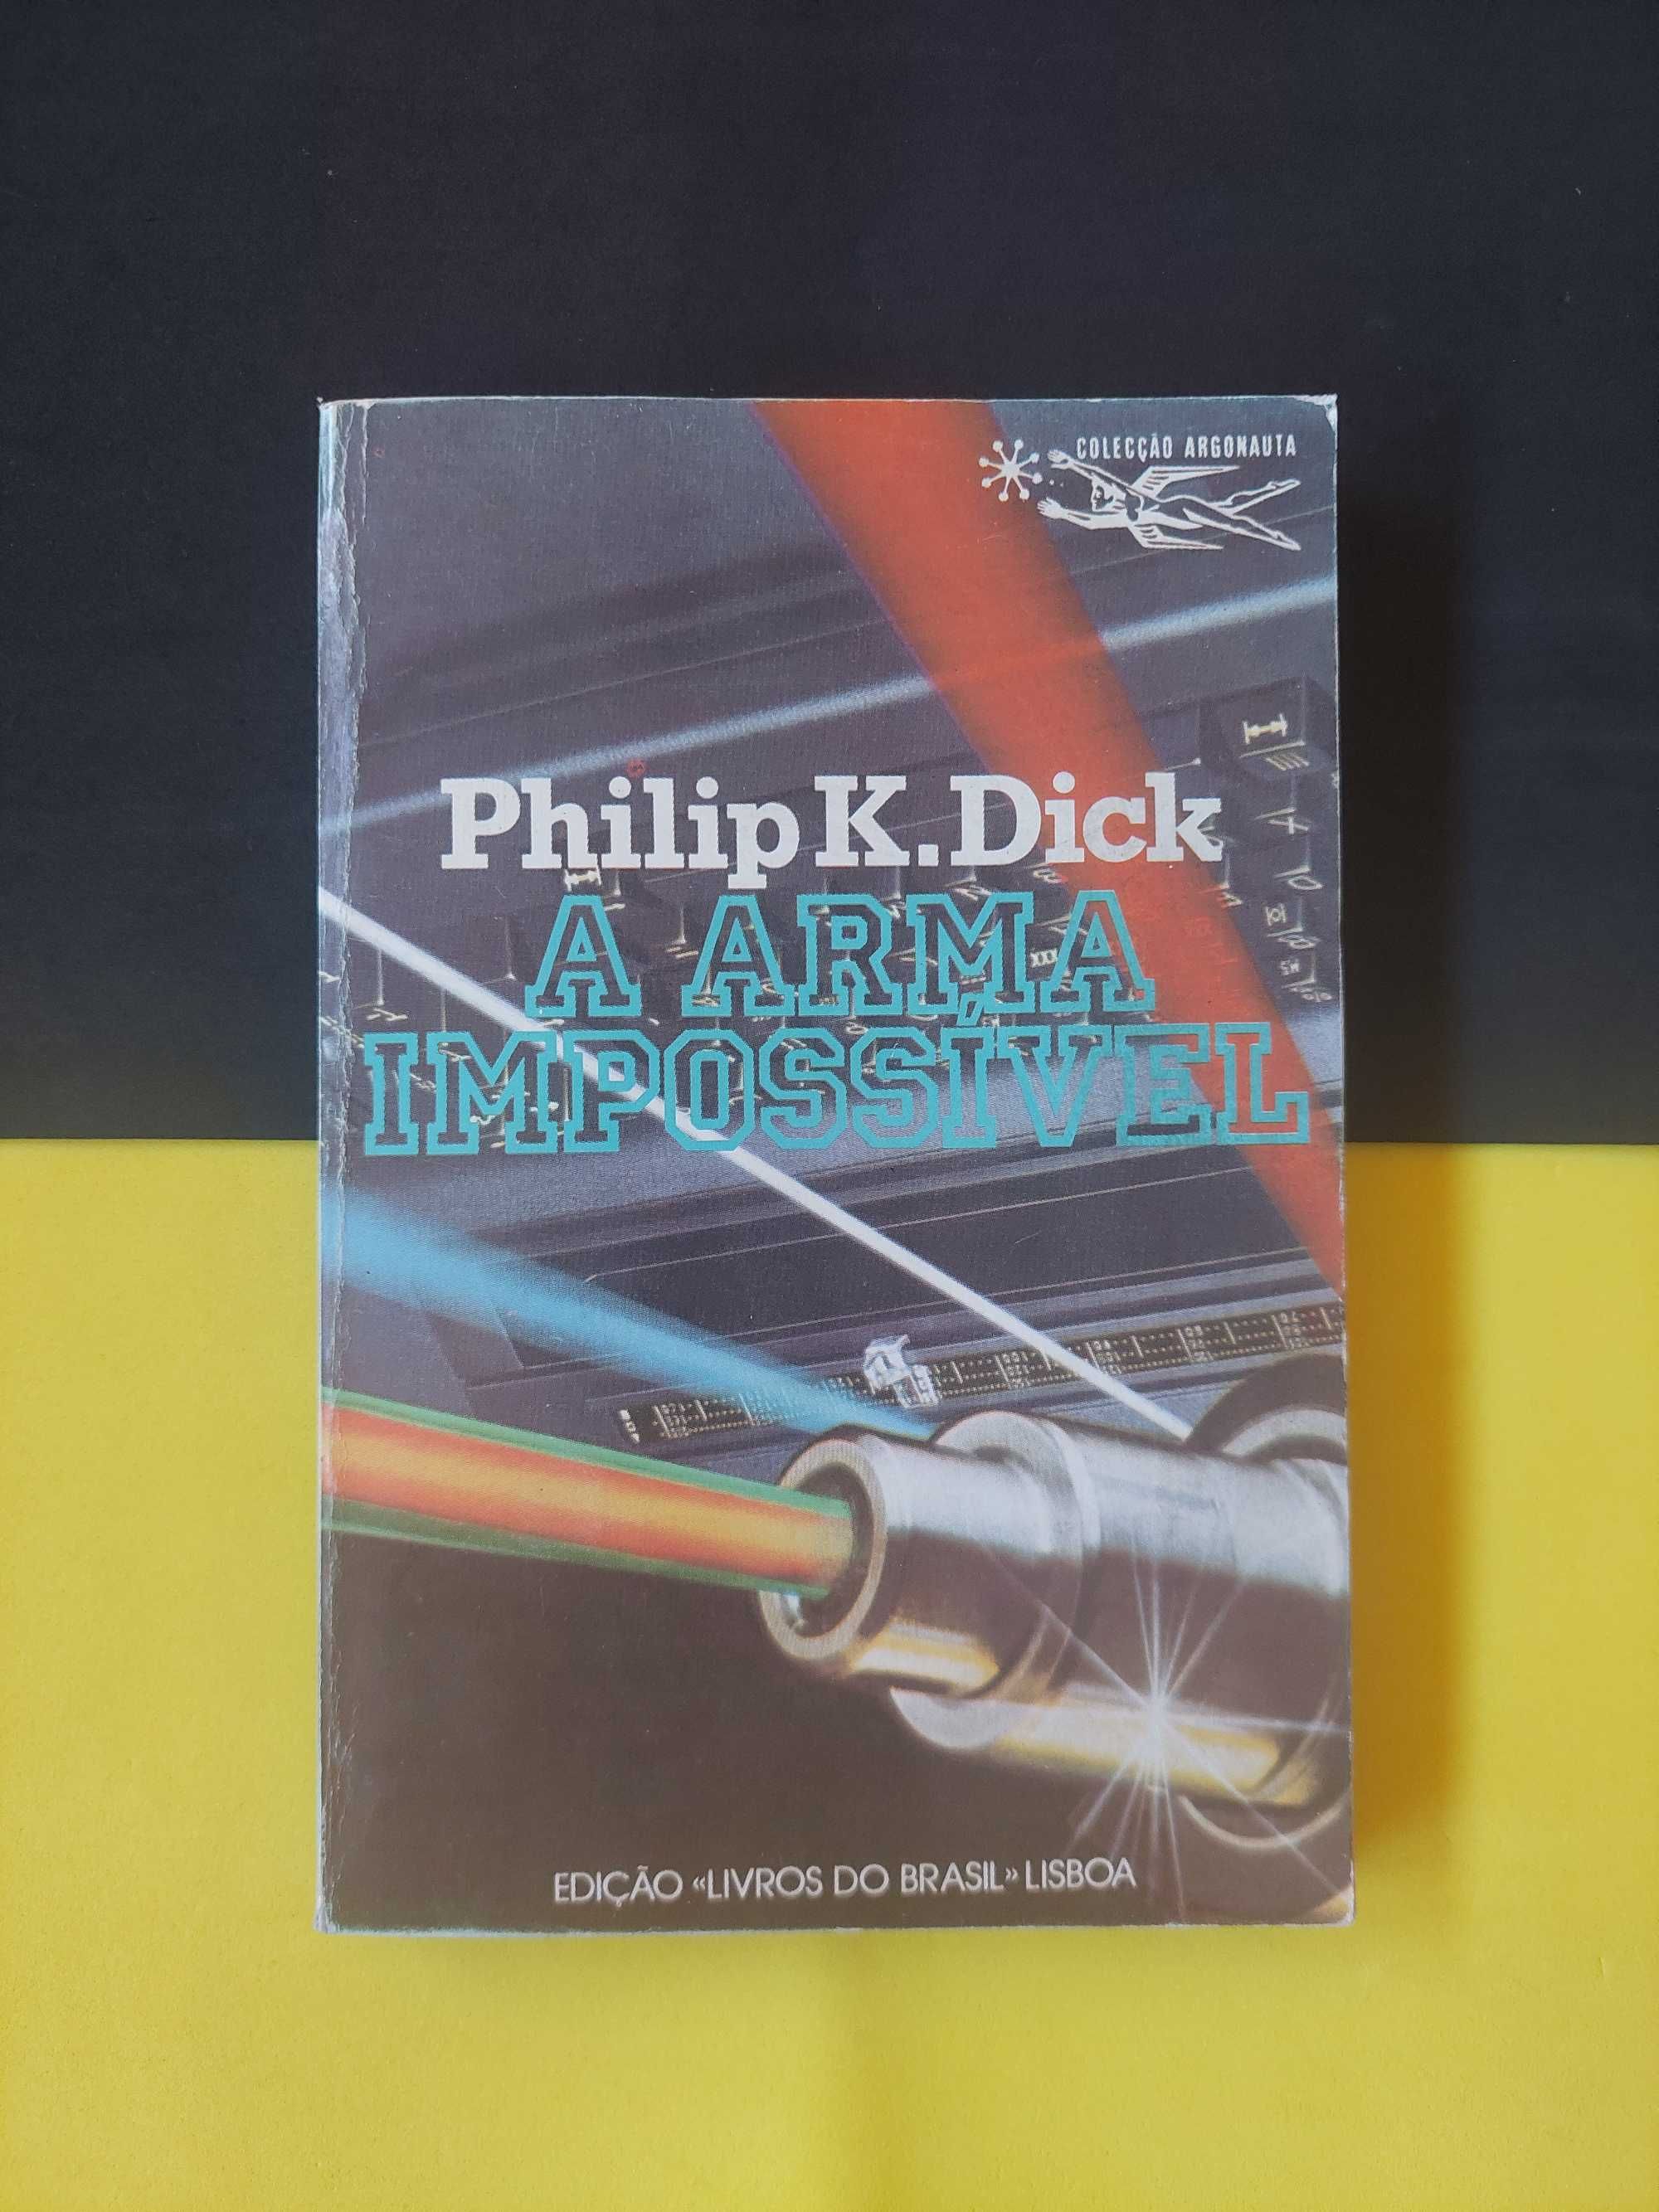 Philip K. Dick - A máquina conservadora, Vol. I e II